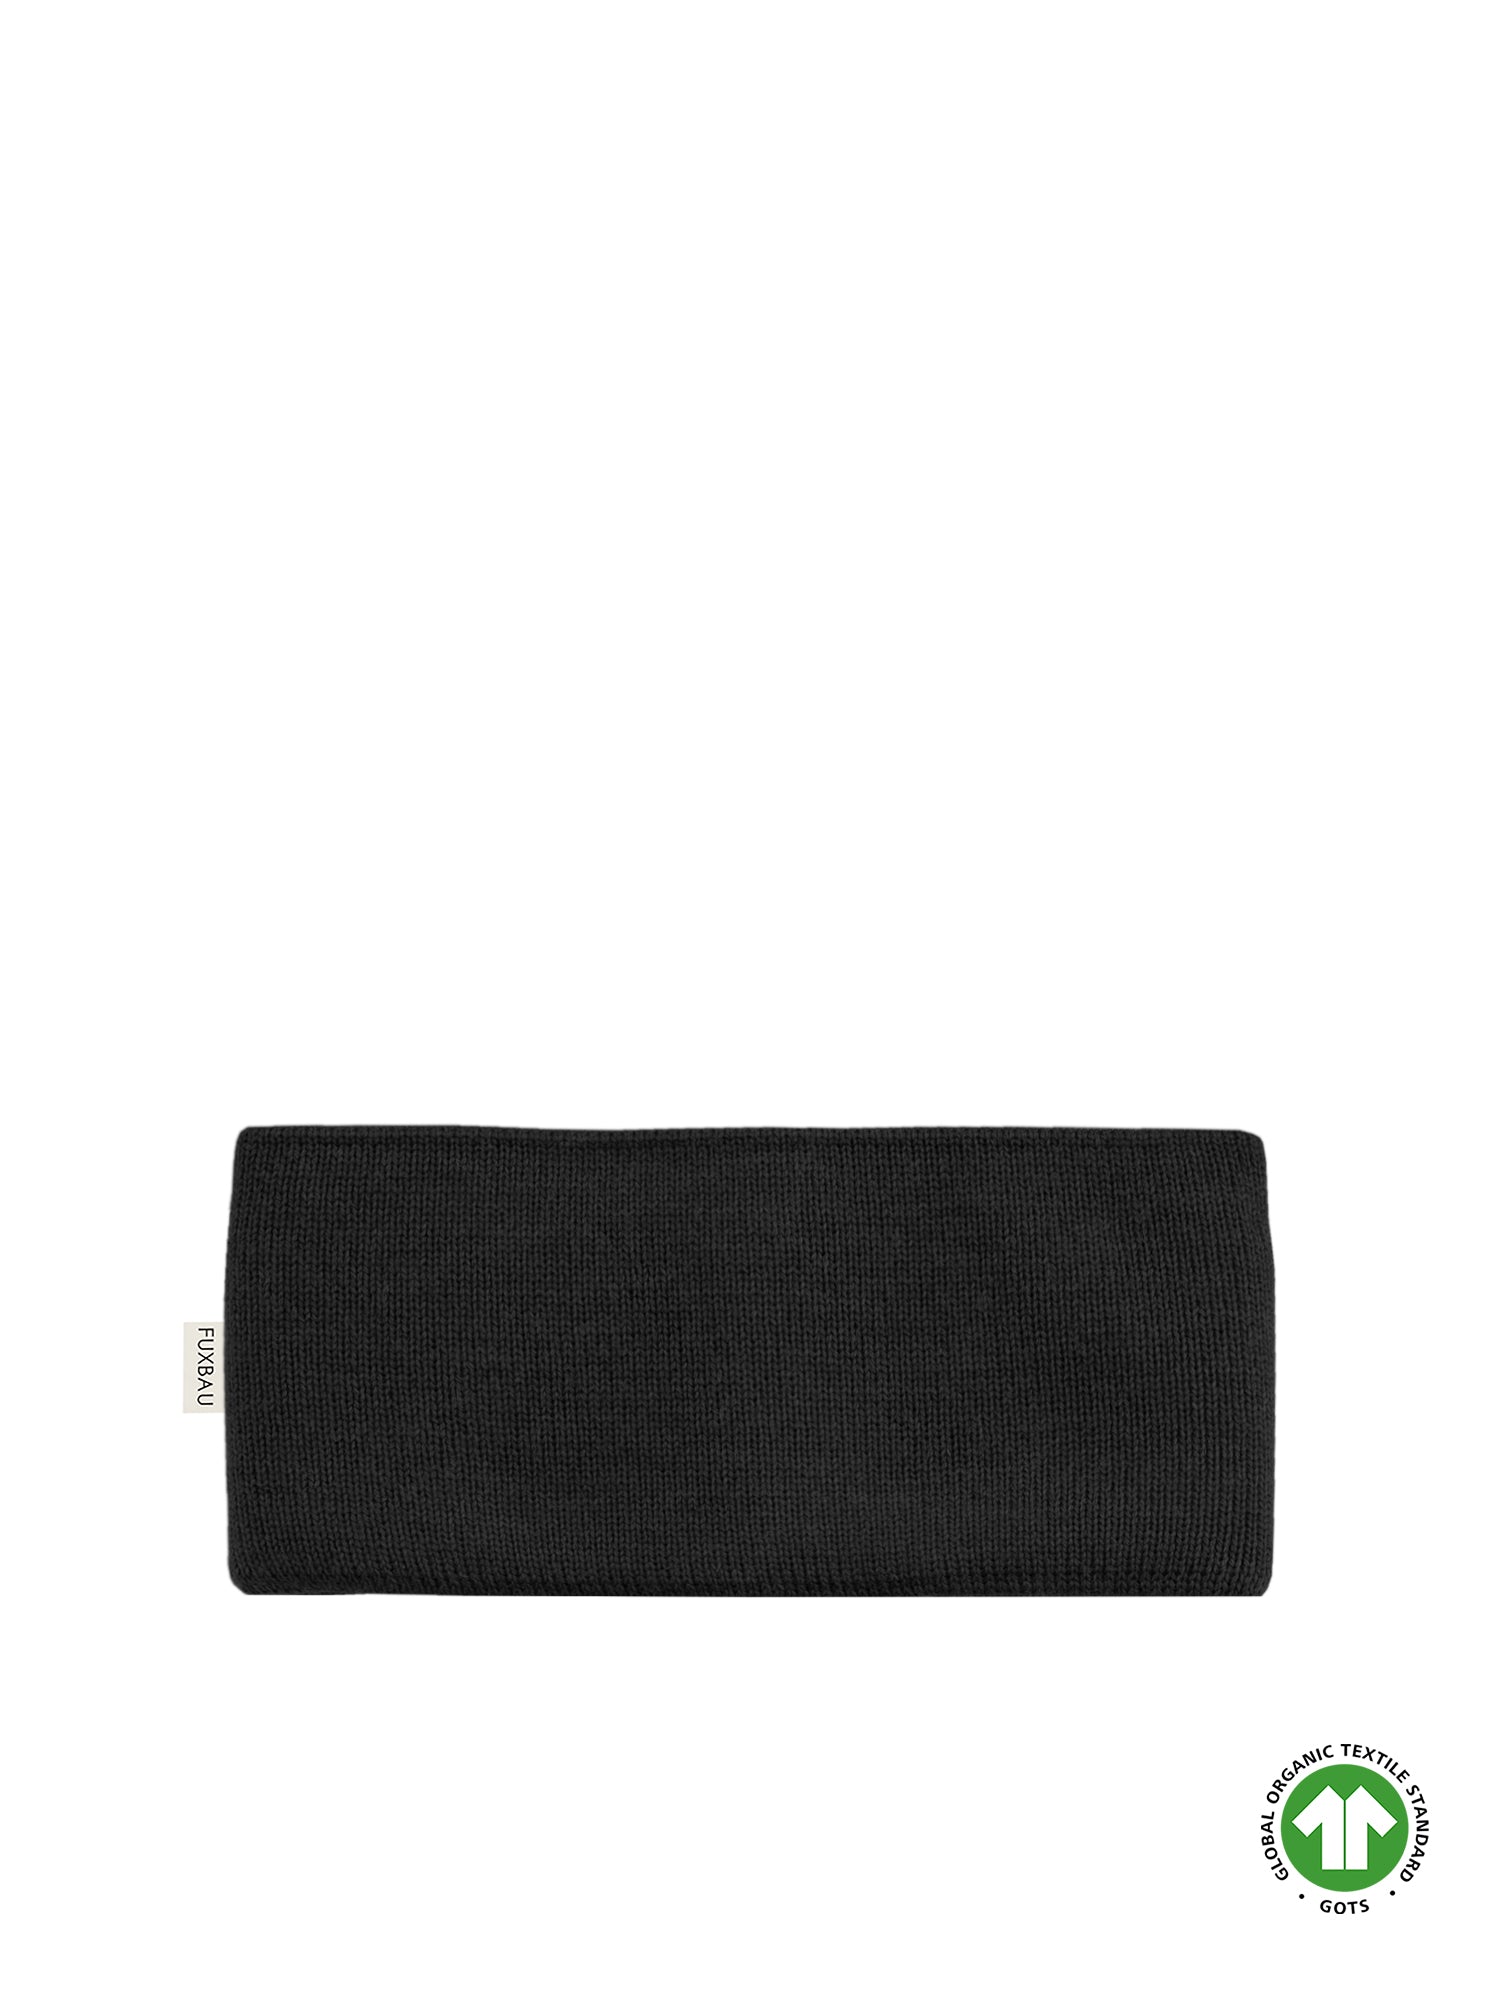 Nachhaltiges Merino Stirnband von FUXBAU in schwarz aus GOTS zertifizierter Merino Schurwolle. Extra weich und warm. Perfekt für einen nachhaltigen Winter.